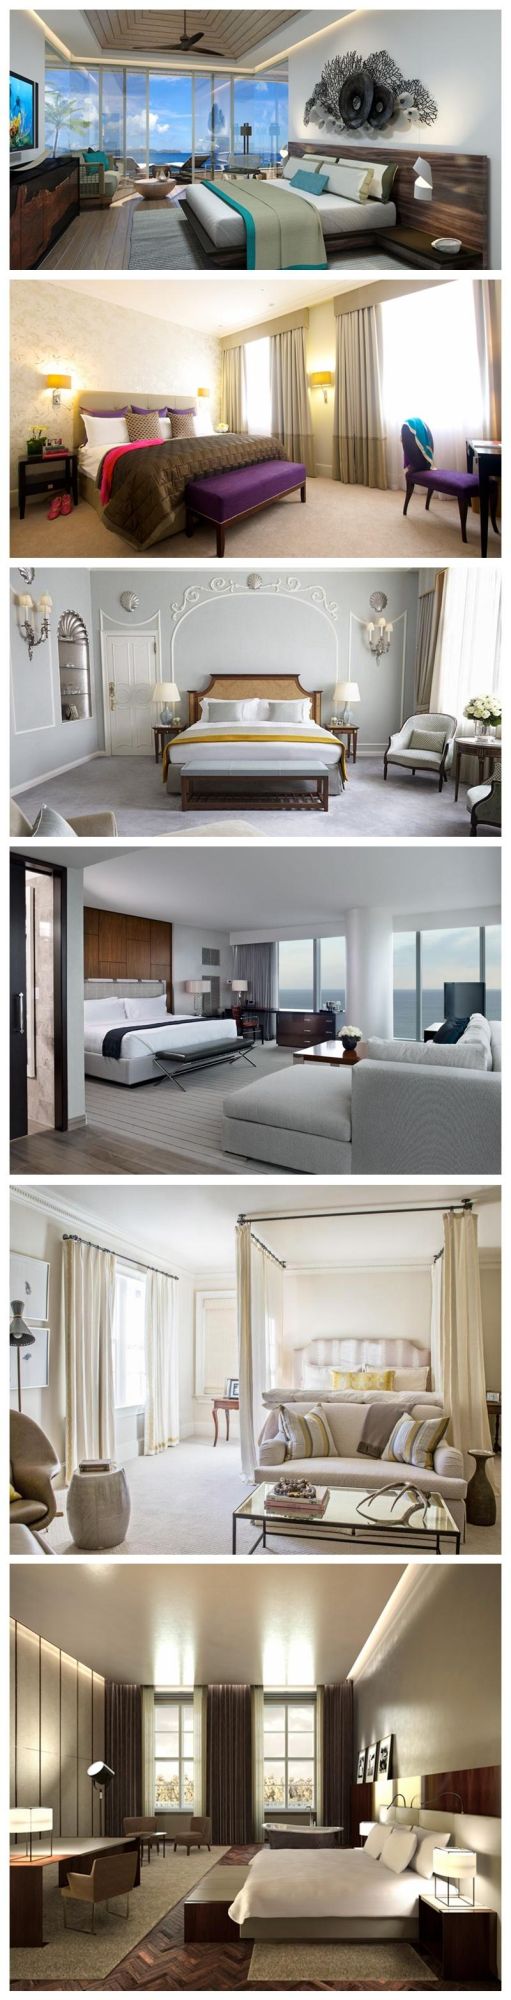 Fashionale Design Elegant Style Hotel Bedroom Furniture Sets for Sale